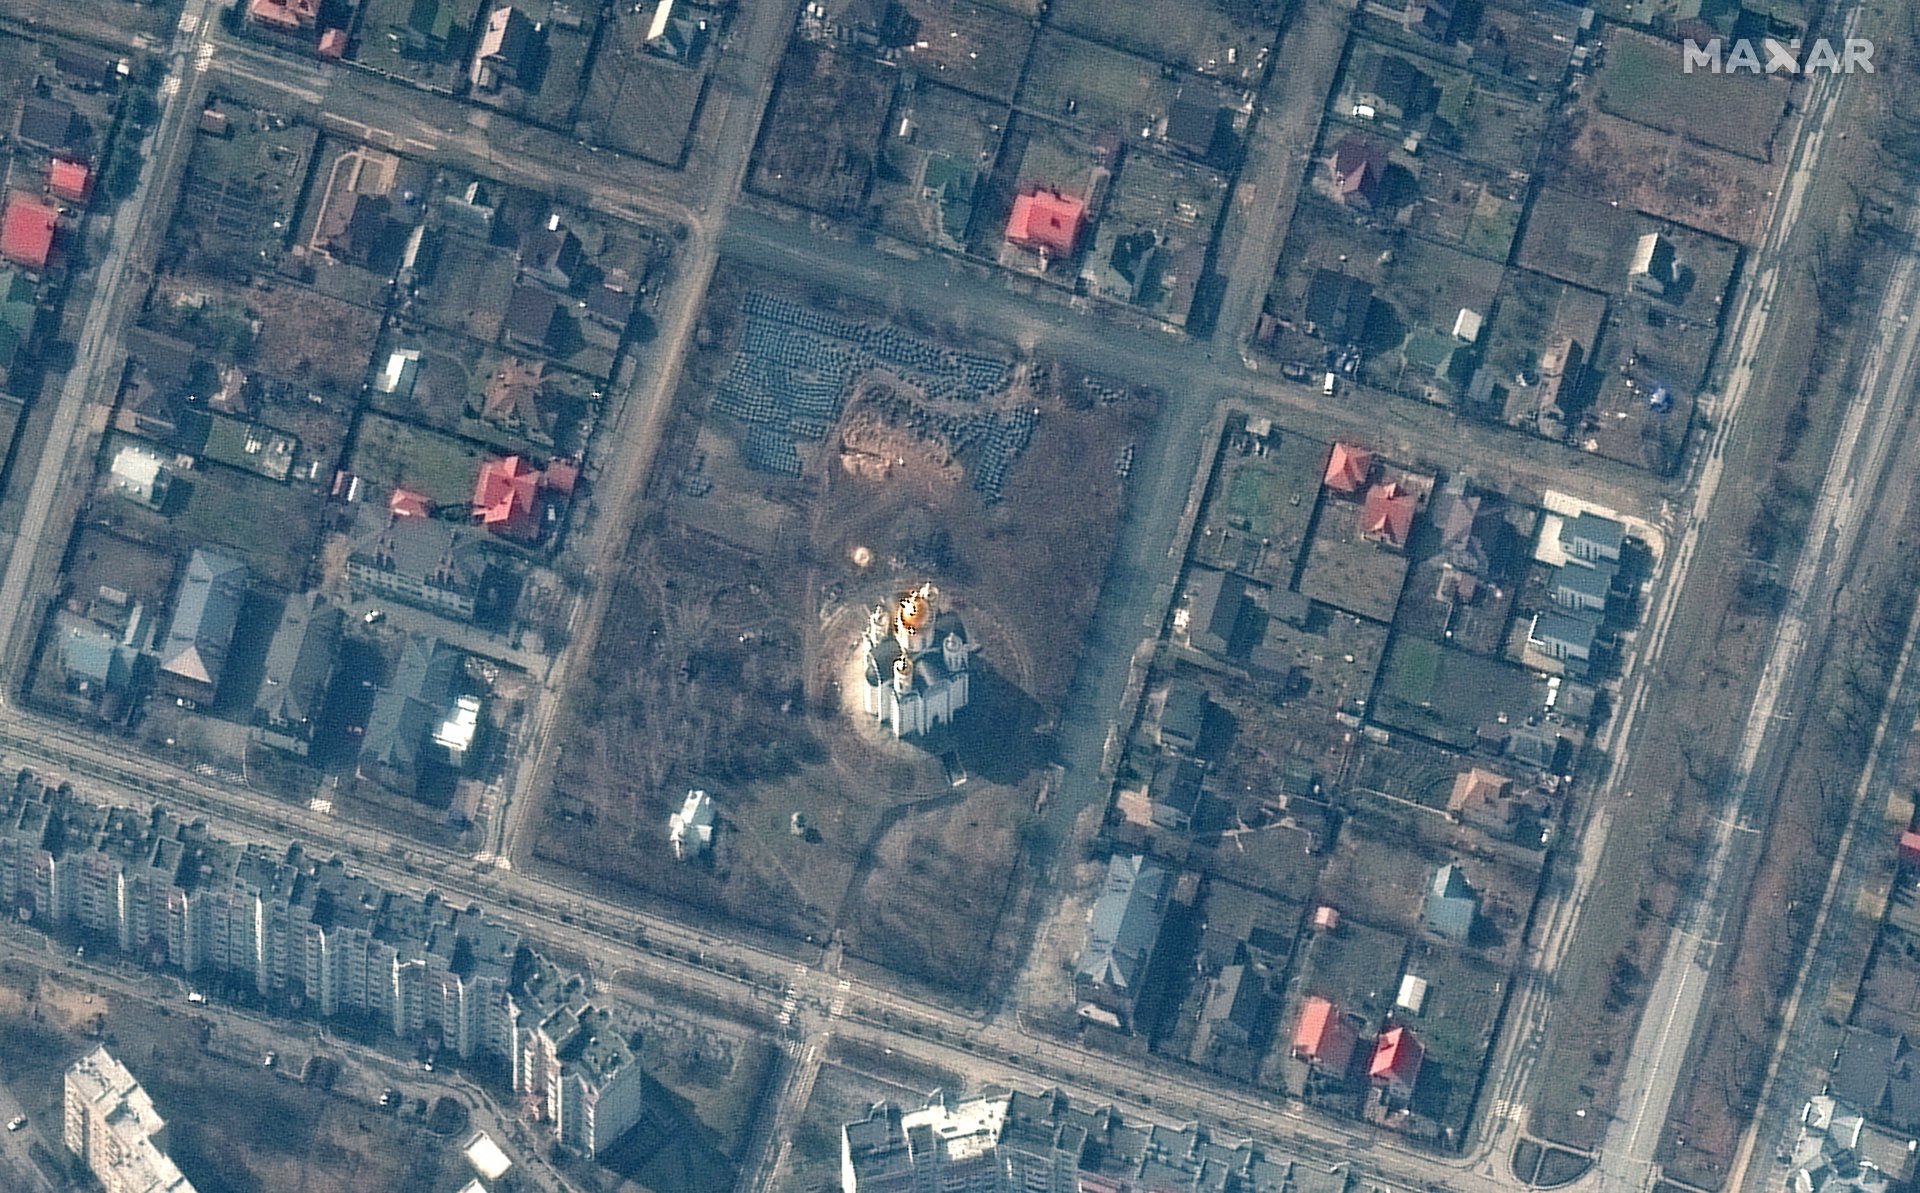  Сателитно изображение, показващо Буча, Украйна, с църквата Св. Андрей в центъра и мястото на евентуалния всеобщ гроб 